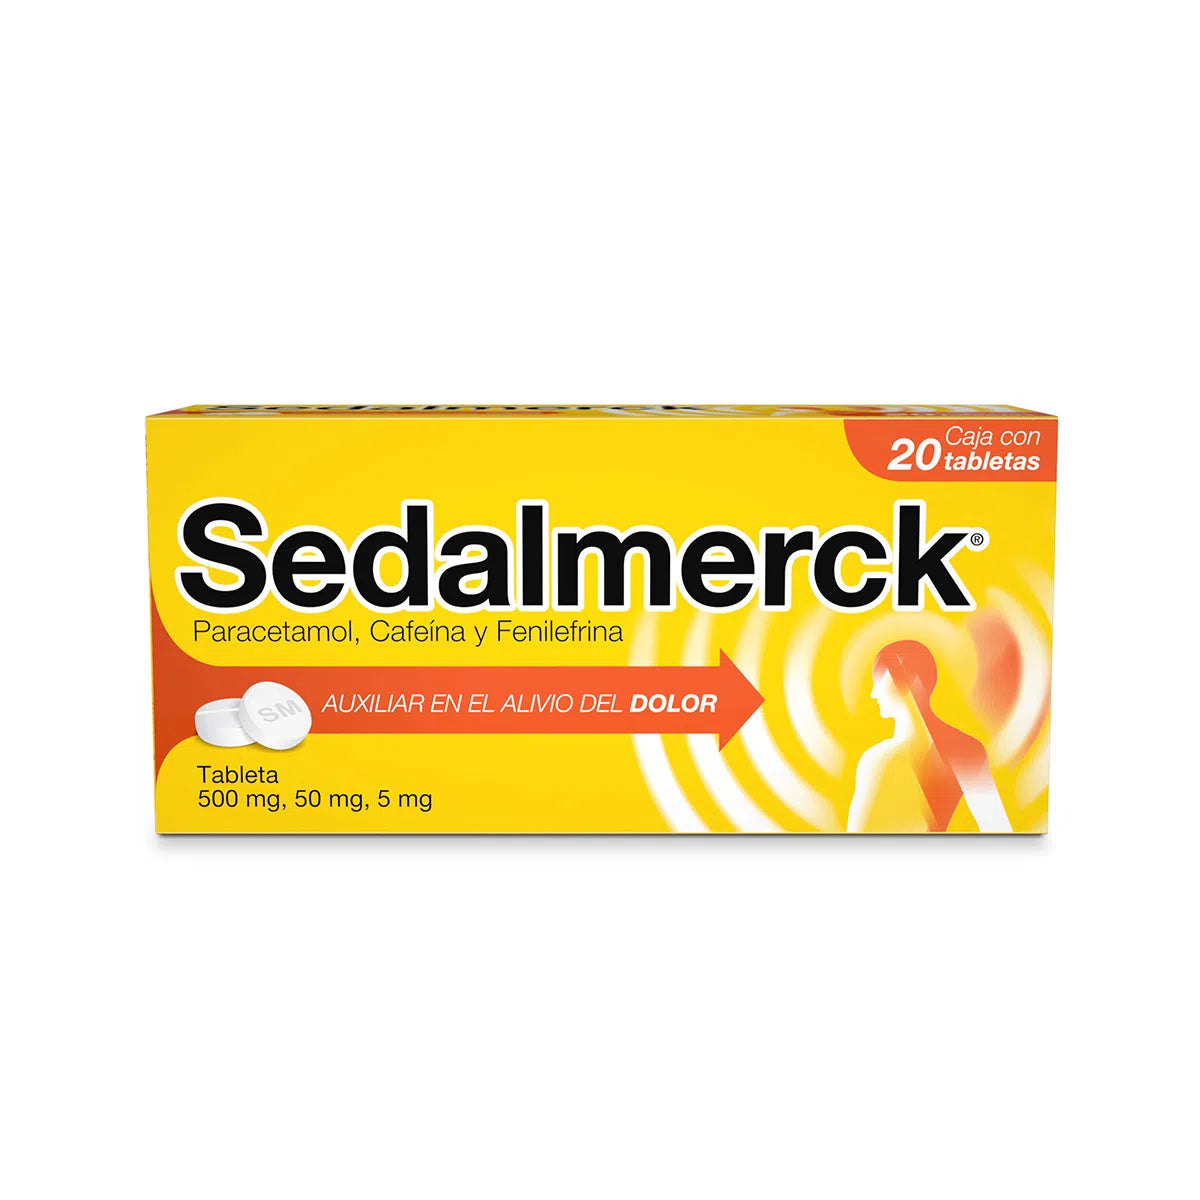 Sedalmerck Nueva Fórmula 20 Tabletas